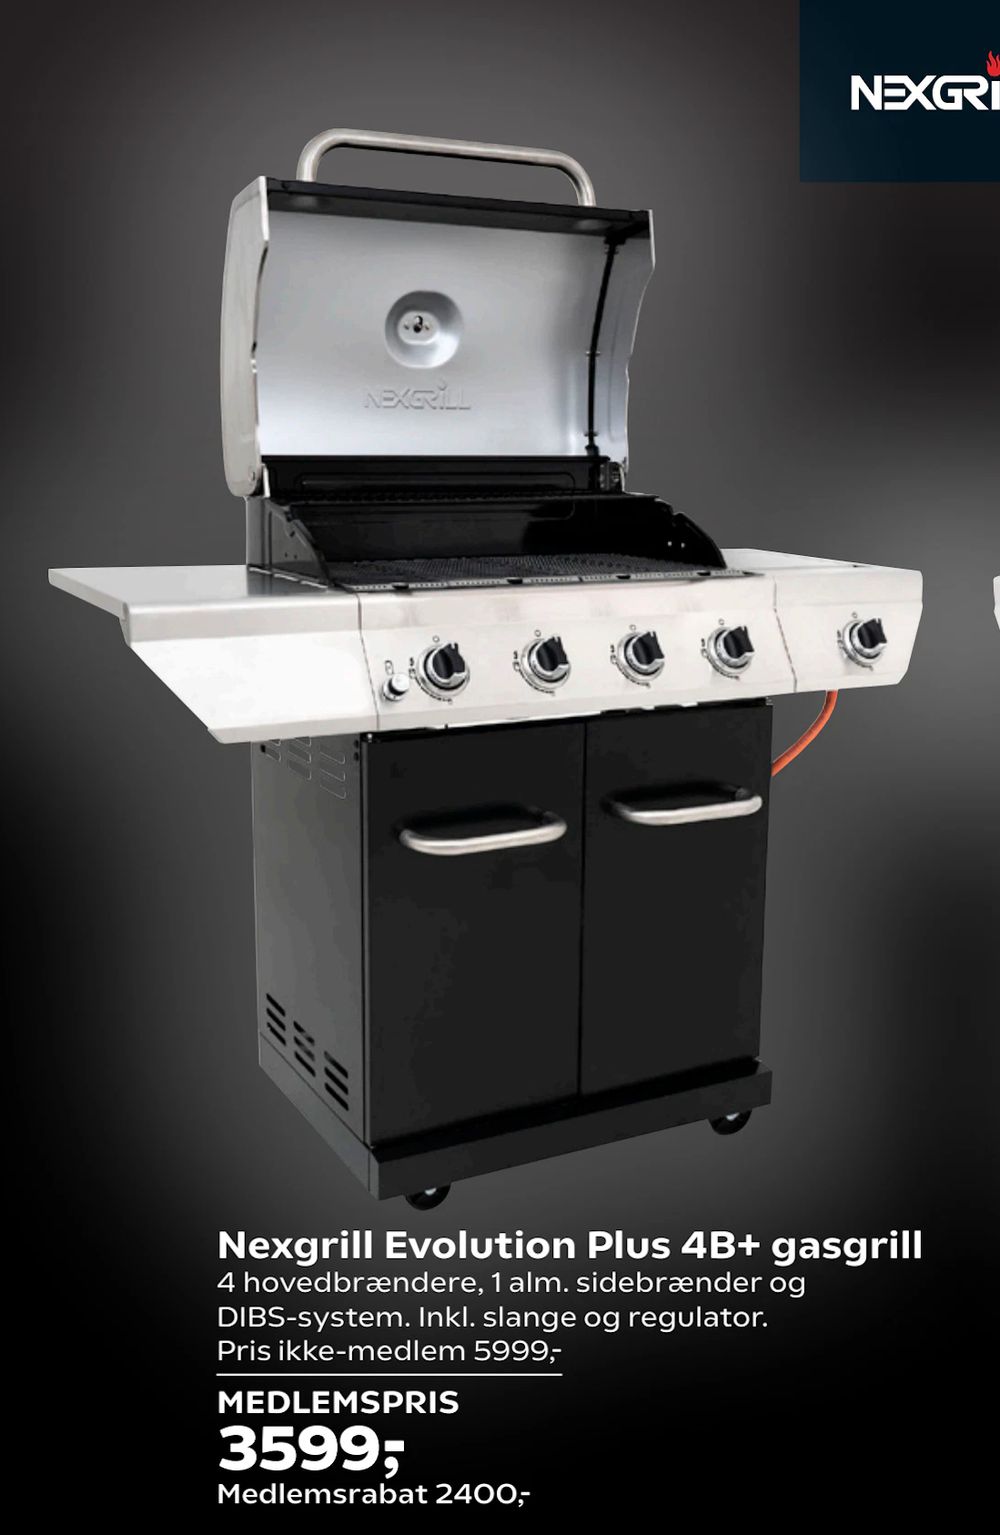 Tilbud på Nexgrill Evolution Plus 4B+ gasgrill fra Coop.dk til 5.999 kr.